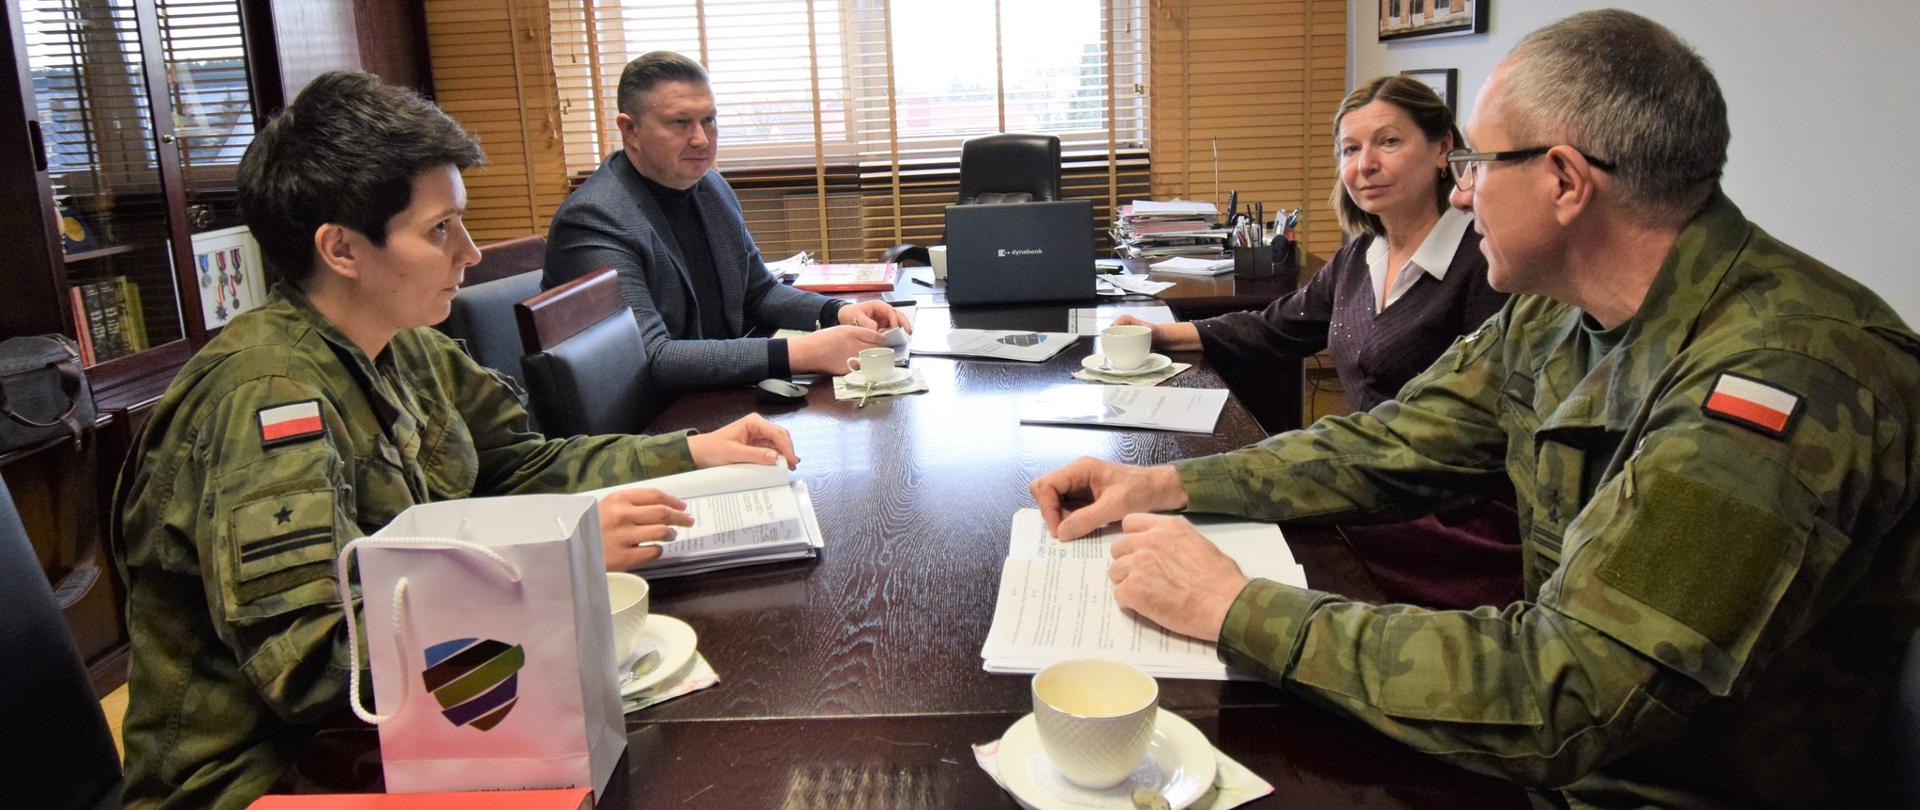 Spotkanie przedstawicieli wojska i dyrektora ZSM w gabinecie starosty
